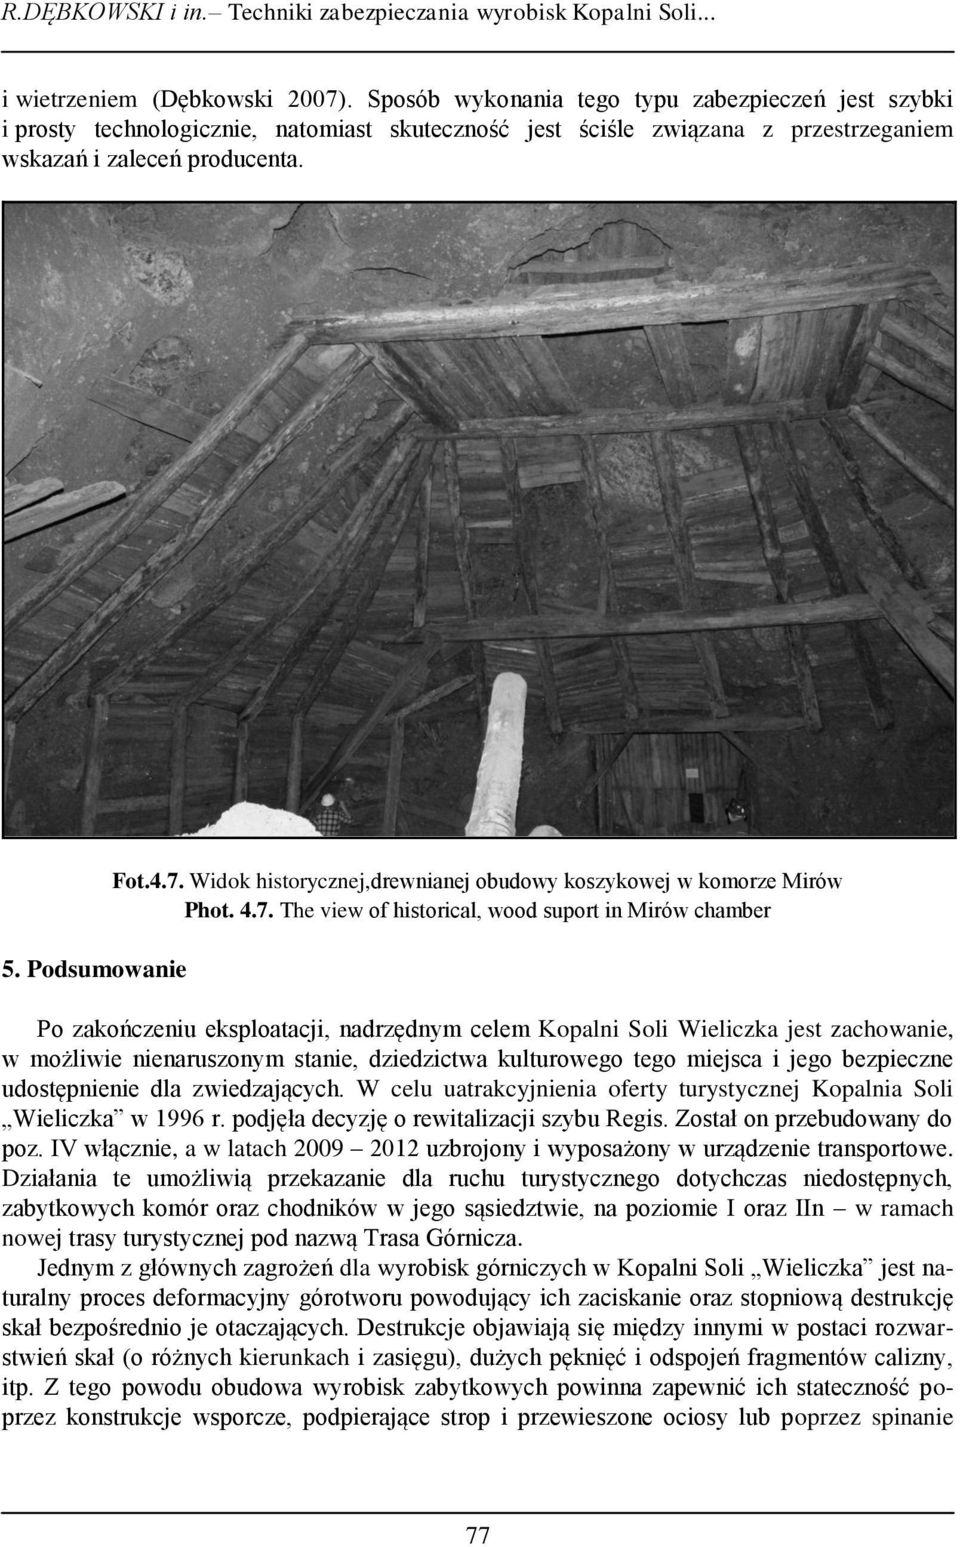 Widok historycznej,drewnianej obudowy koszykowej w komorze Mirów Phot. 4.7.